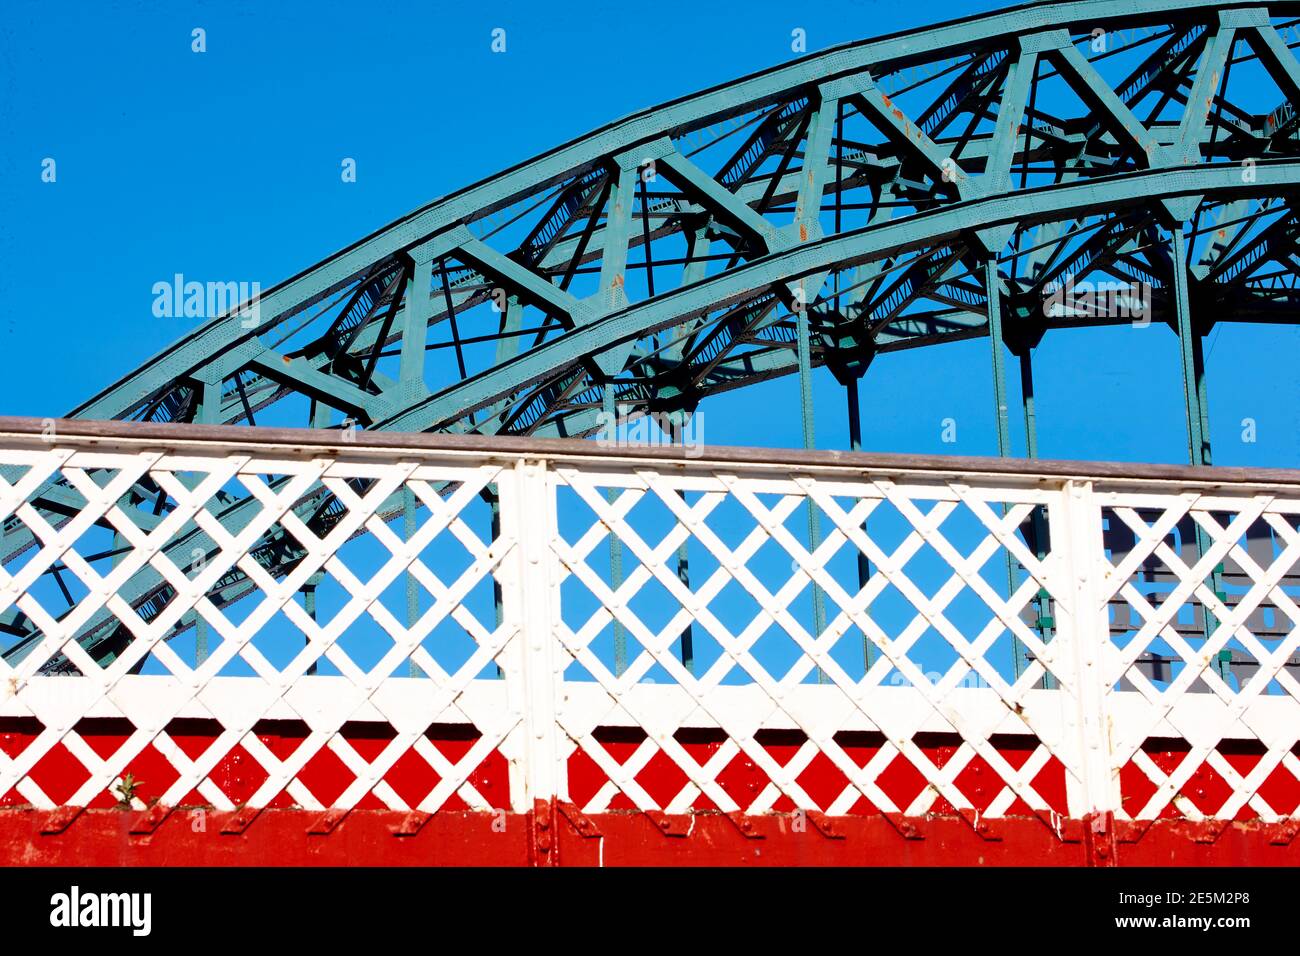 The iconic Tyne Bridge in Newcastle Upon Tyne, Tyneside, North East England, UK Stock Photo